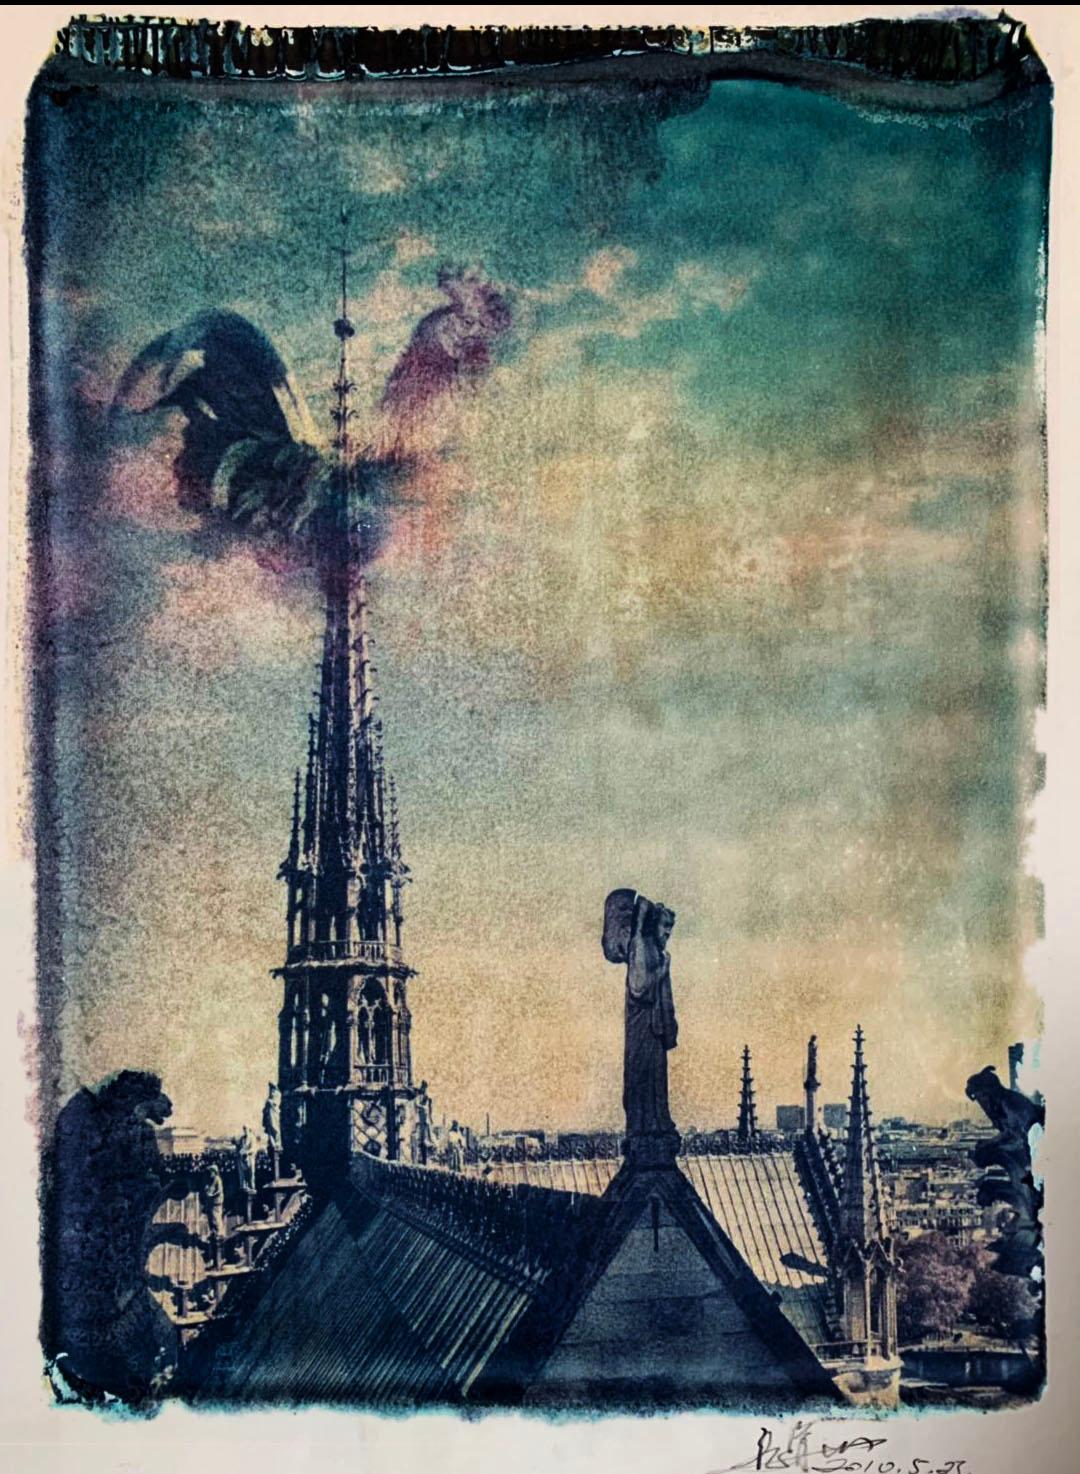 Landscape Photograph xulong zhang - Notre Dame 8 - Contemporain, 21e siècle, Polaroid, Paris, Icons